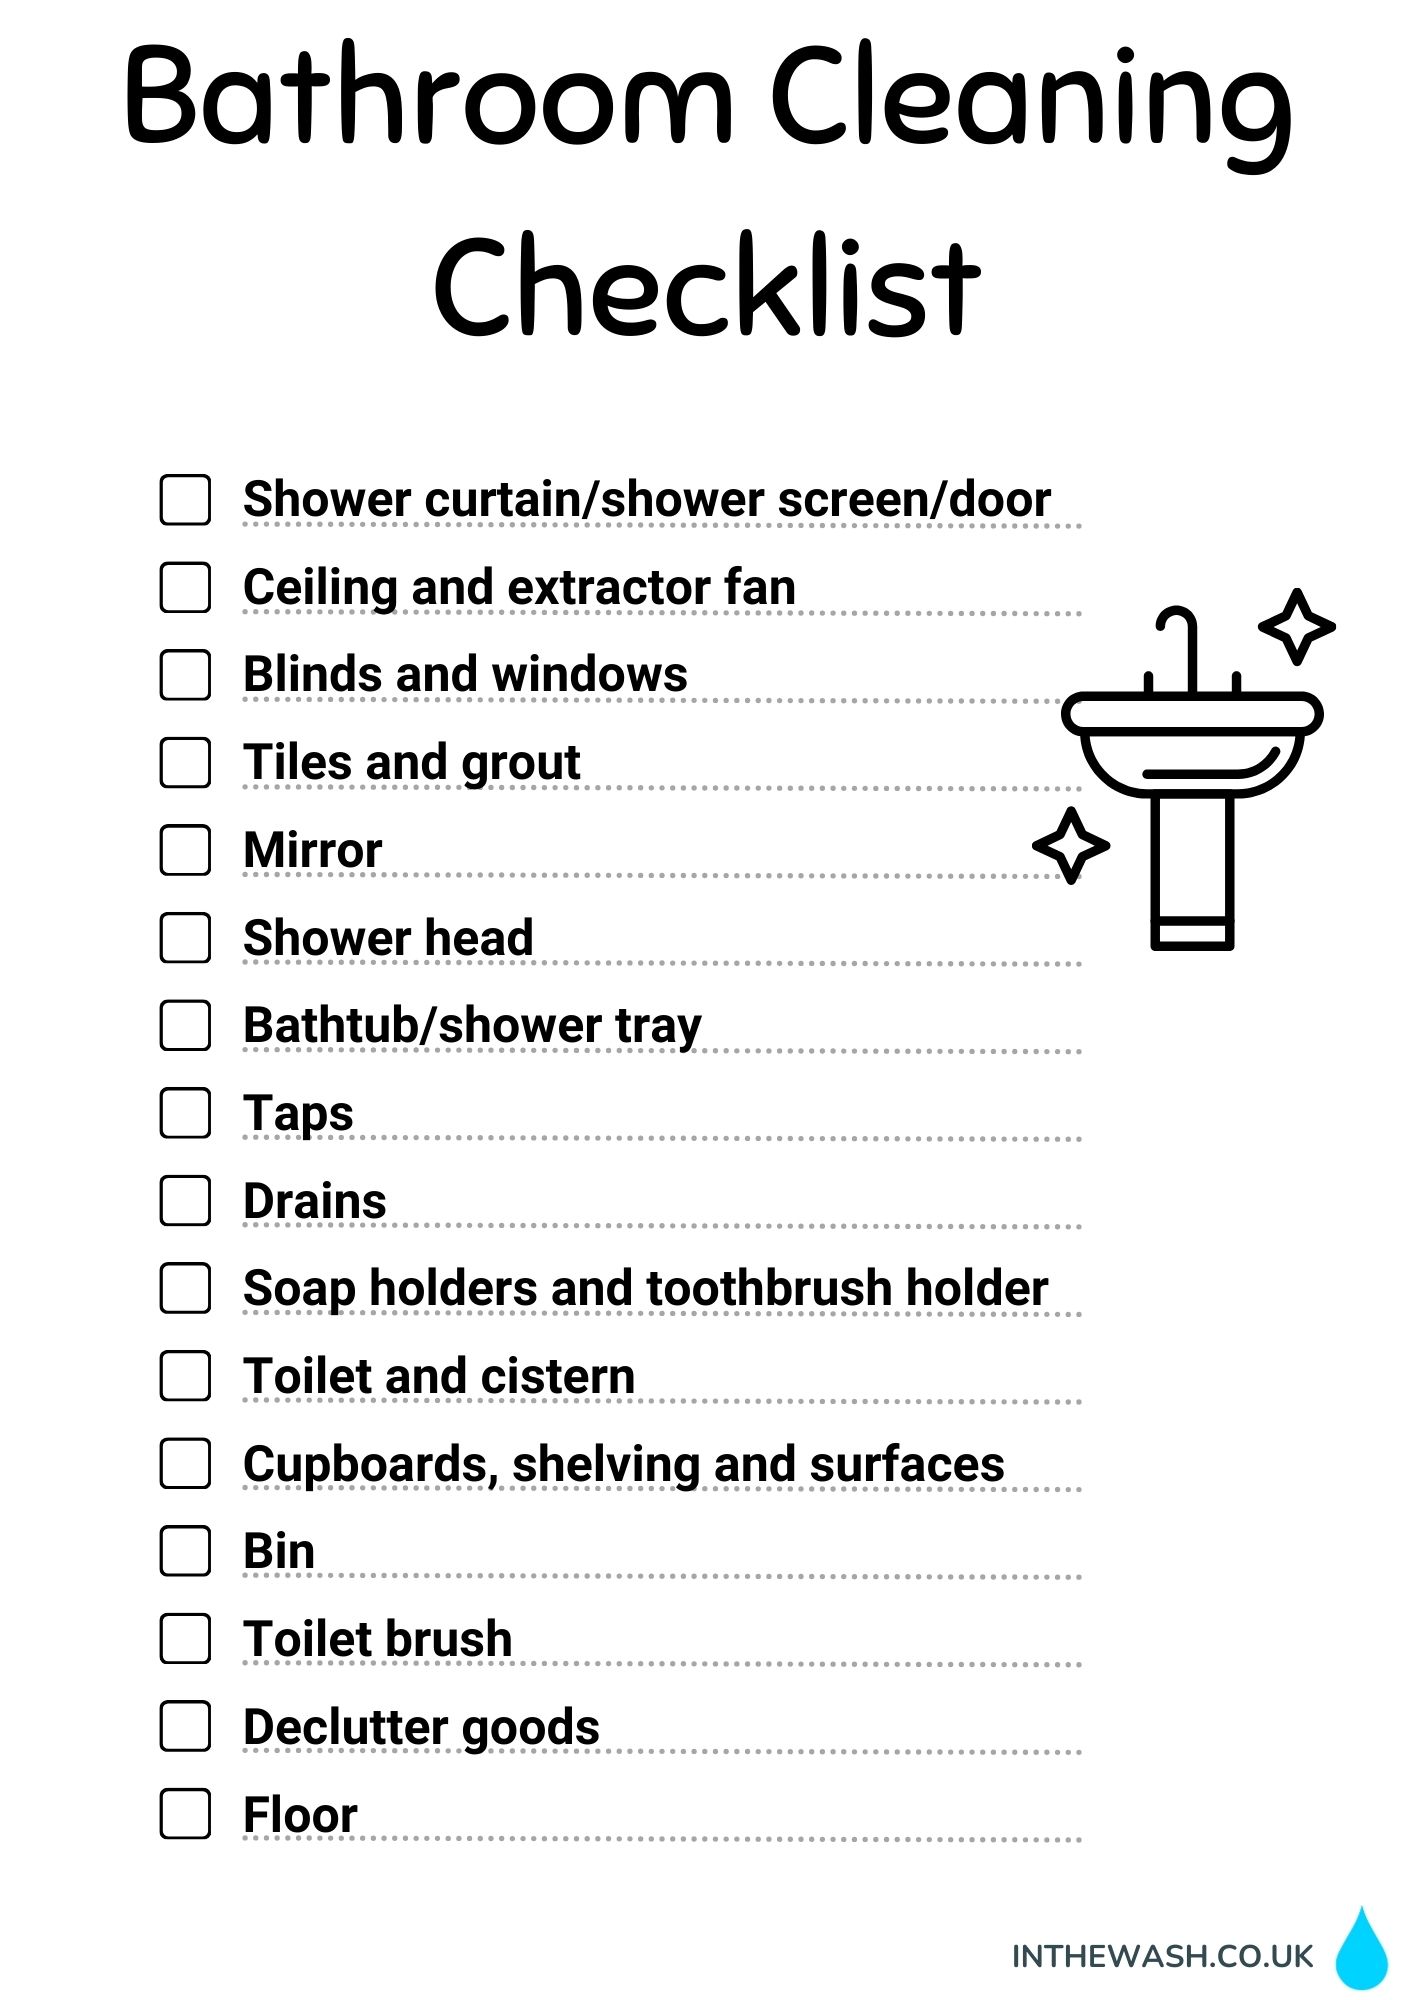 Bathroom cleaning checklist